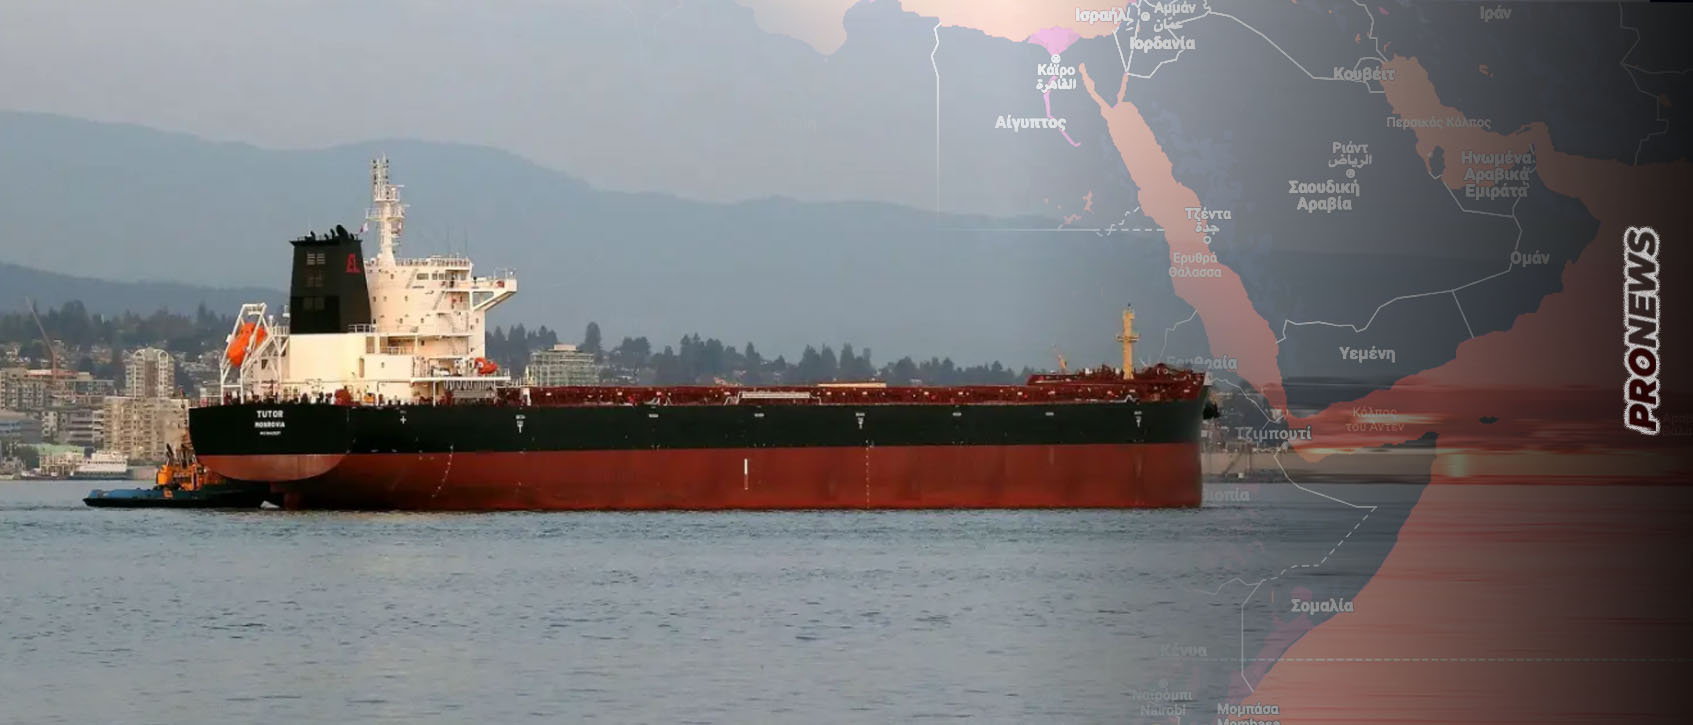 Βίντεο: Η στιγμή που δύο μη επανδρωμένα σκάφη επιφανείας των Χούθι πλήττουν το ελληνικό πλοίο Tutor στην Ερυθρά Θάλασσα